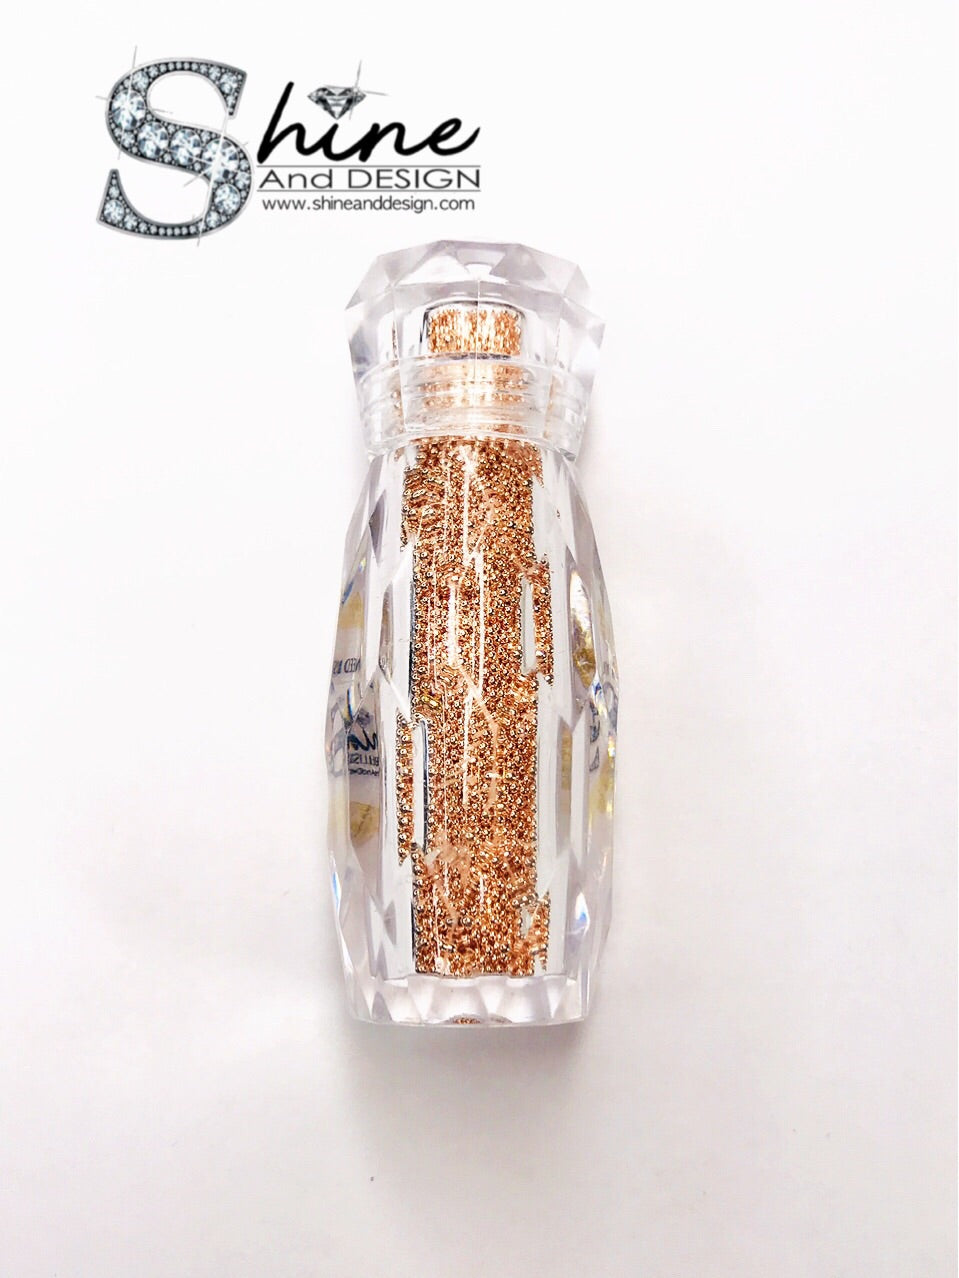 1mm - Metal Rose Gold Beads